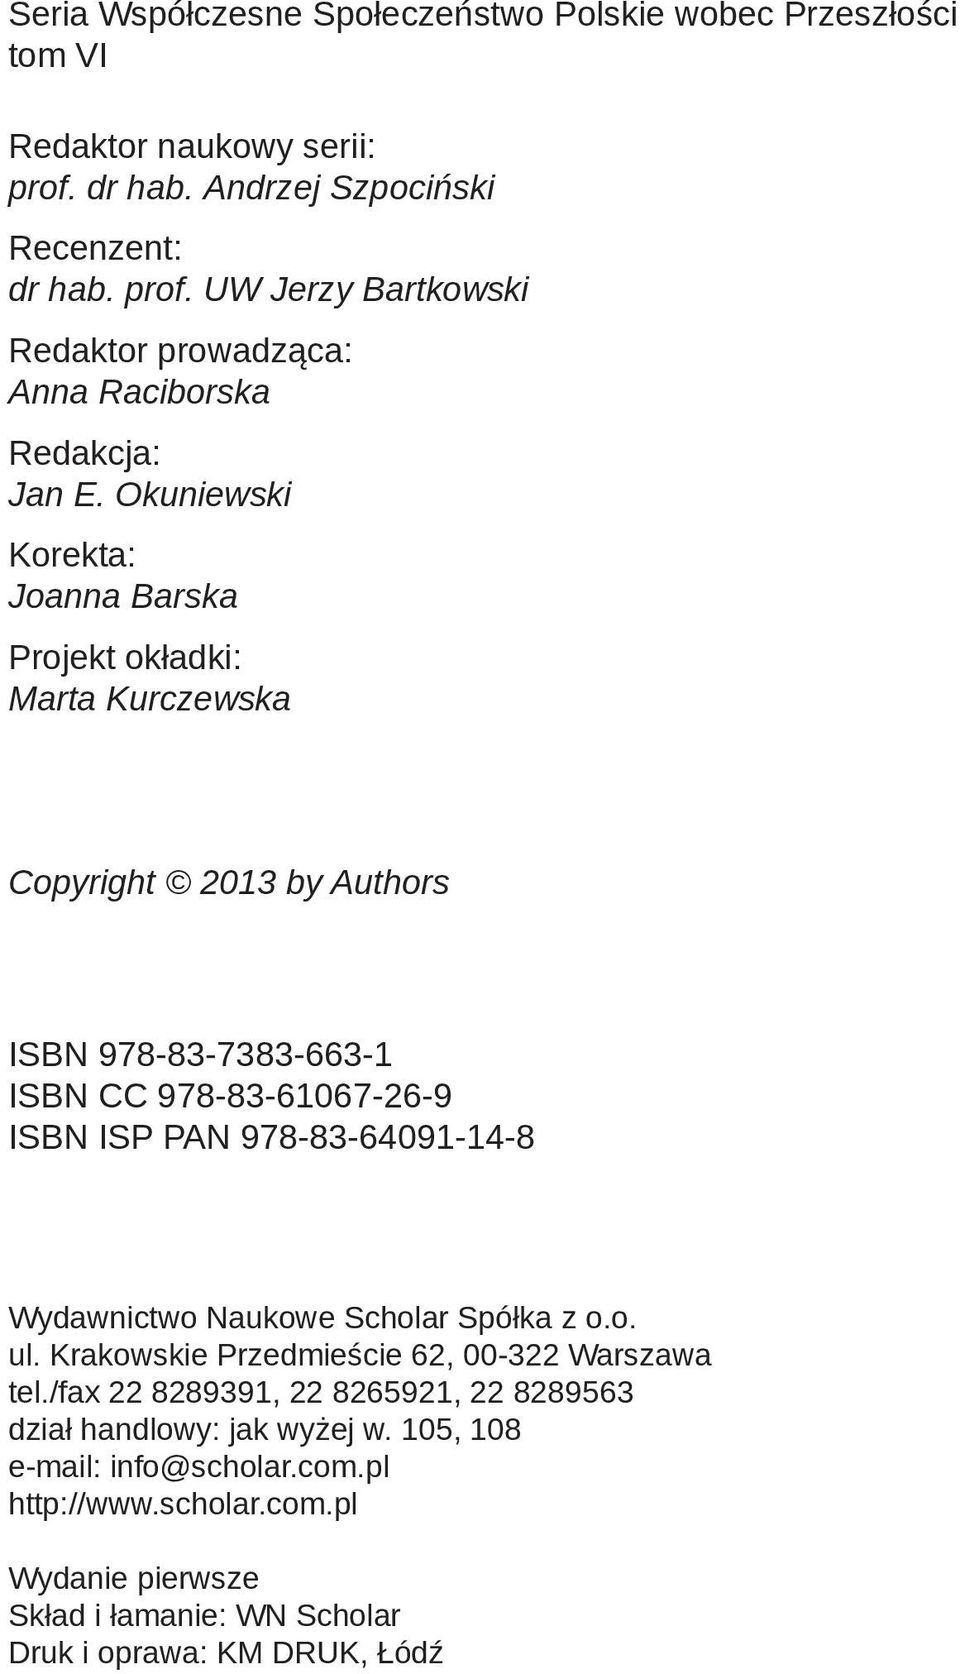 Wydawnictwo Naukowe Scholar Spółka z o.o. ul. Krakowskie Przedmieście 62, 00-322 Warszawa tel./fax 22 8289391, 22 8265921, 22 8289563 dział handlowy: jak wyżej w.